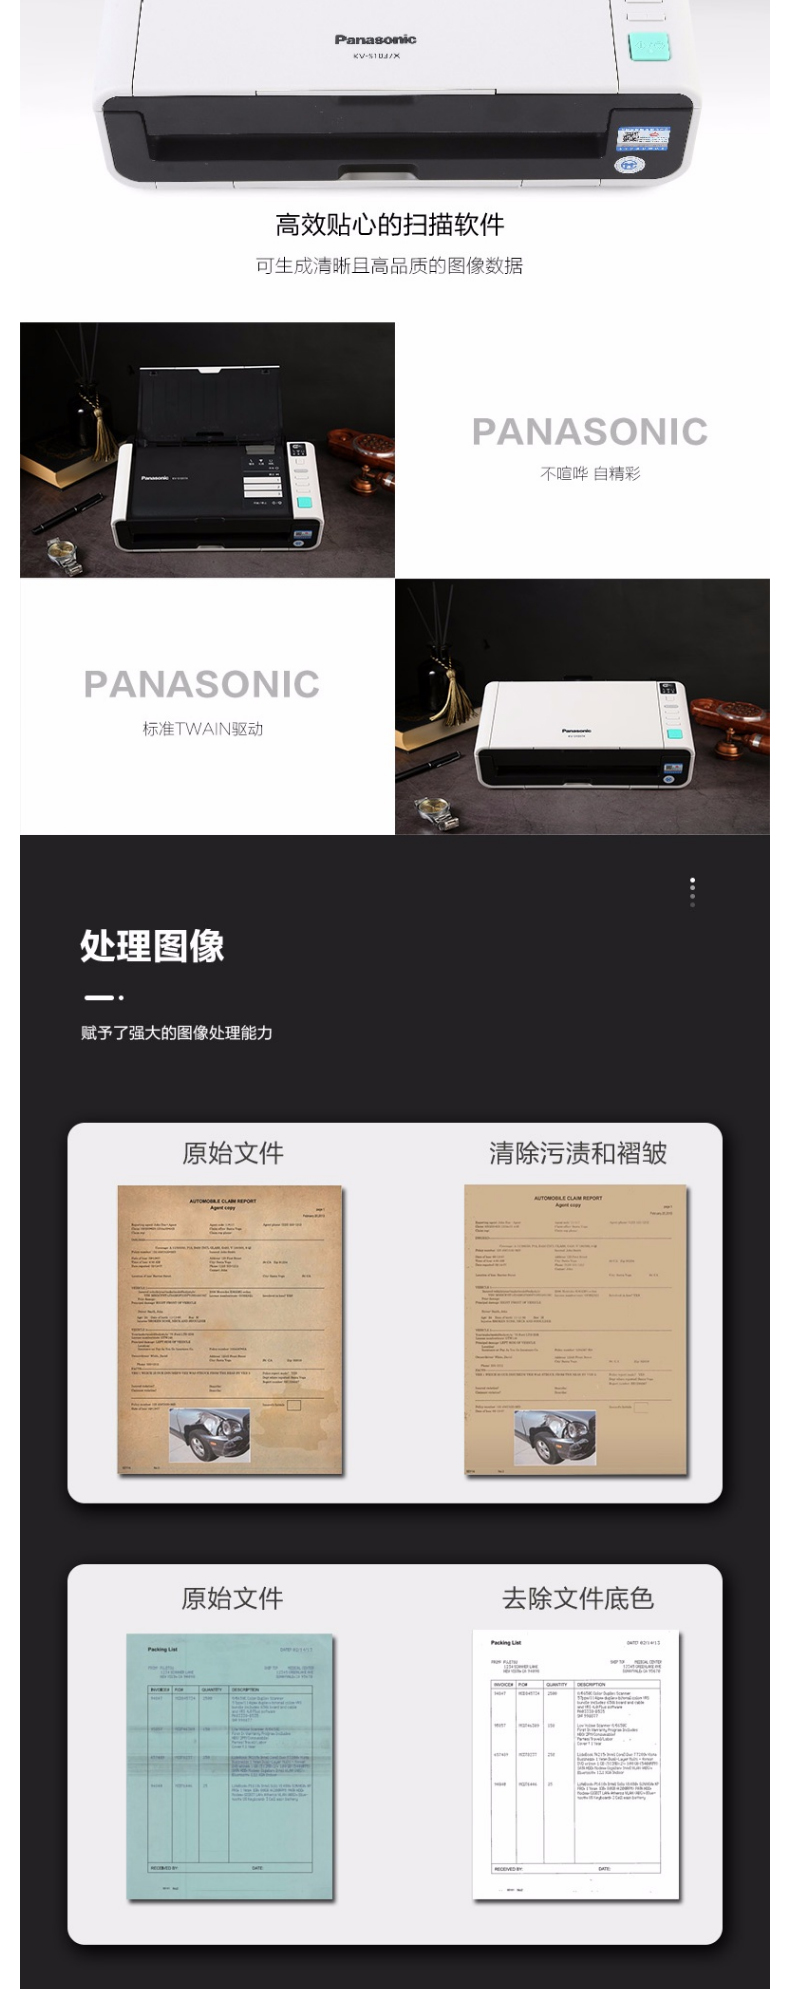 松下 Panasonic 扫描仪A4高速高清彩色双面自动馈纸文档发票卡片 WIFI+有线网络 KV-S1037X 